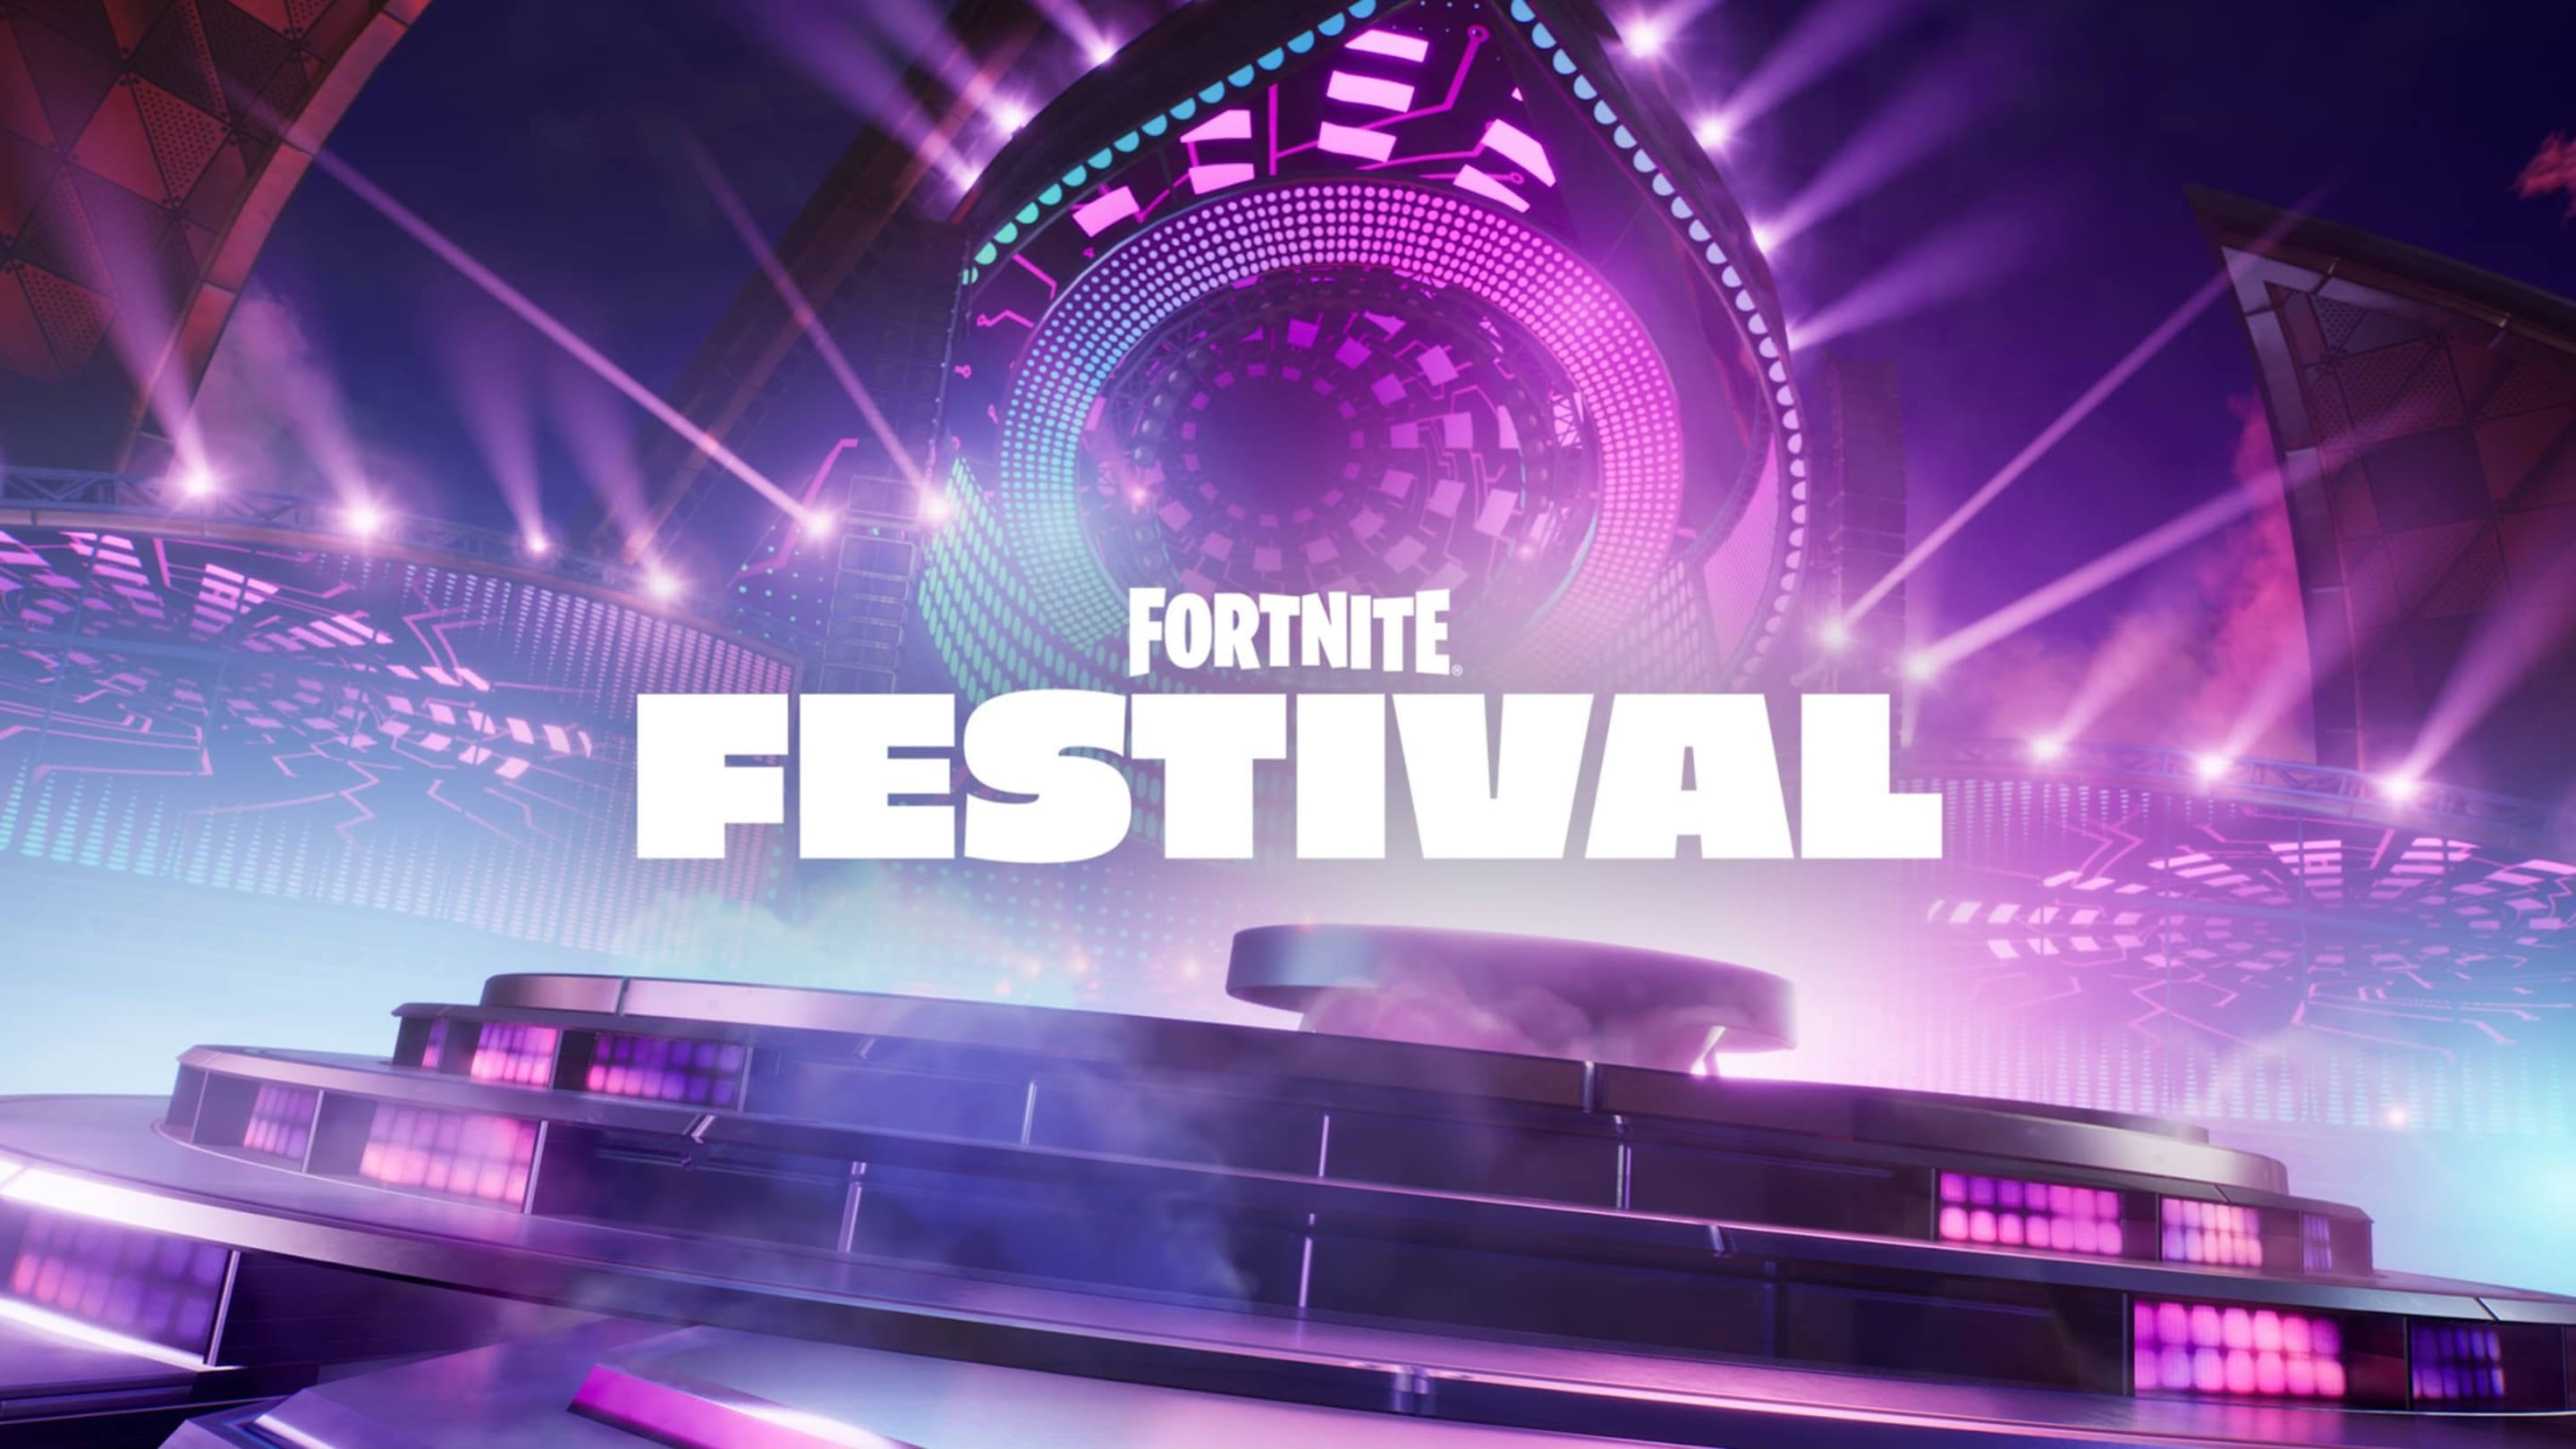 Here's the Full Fortnite Festival Setlist at Launch